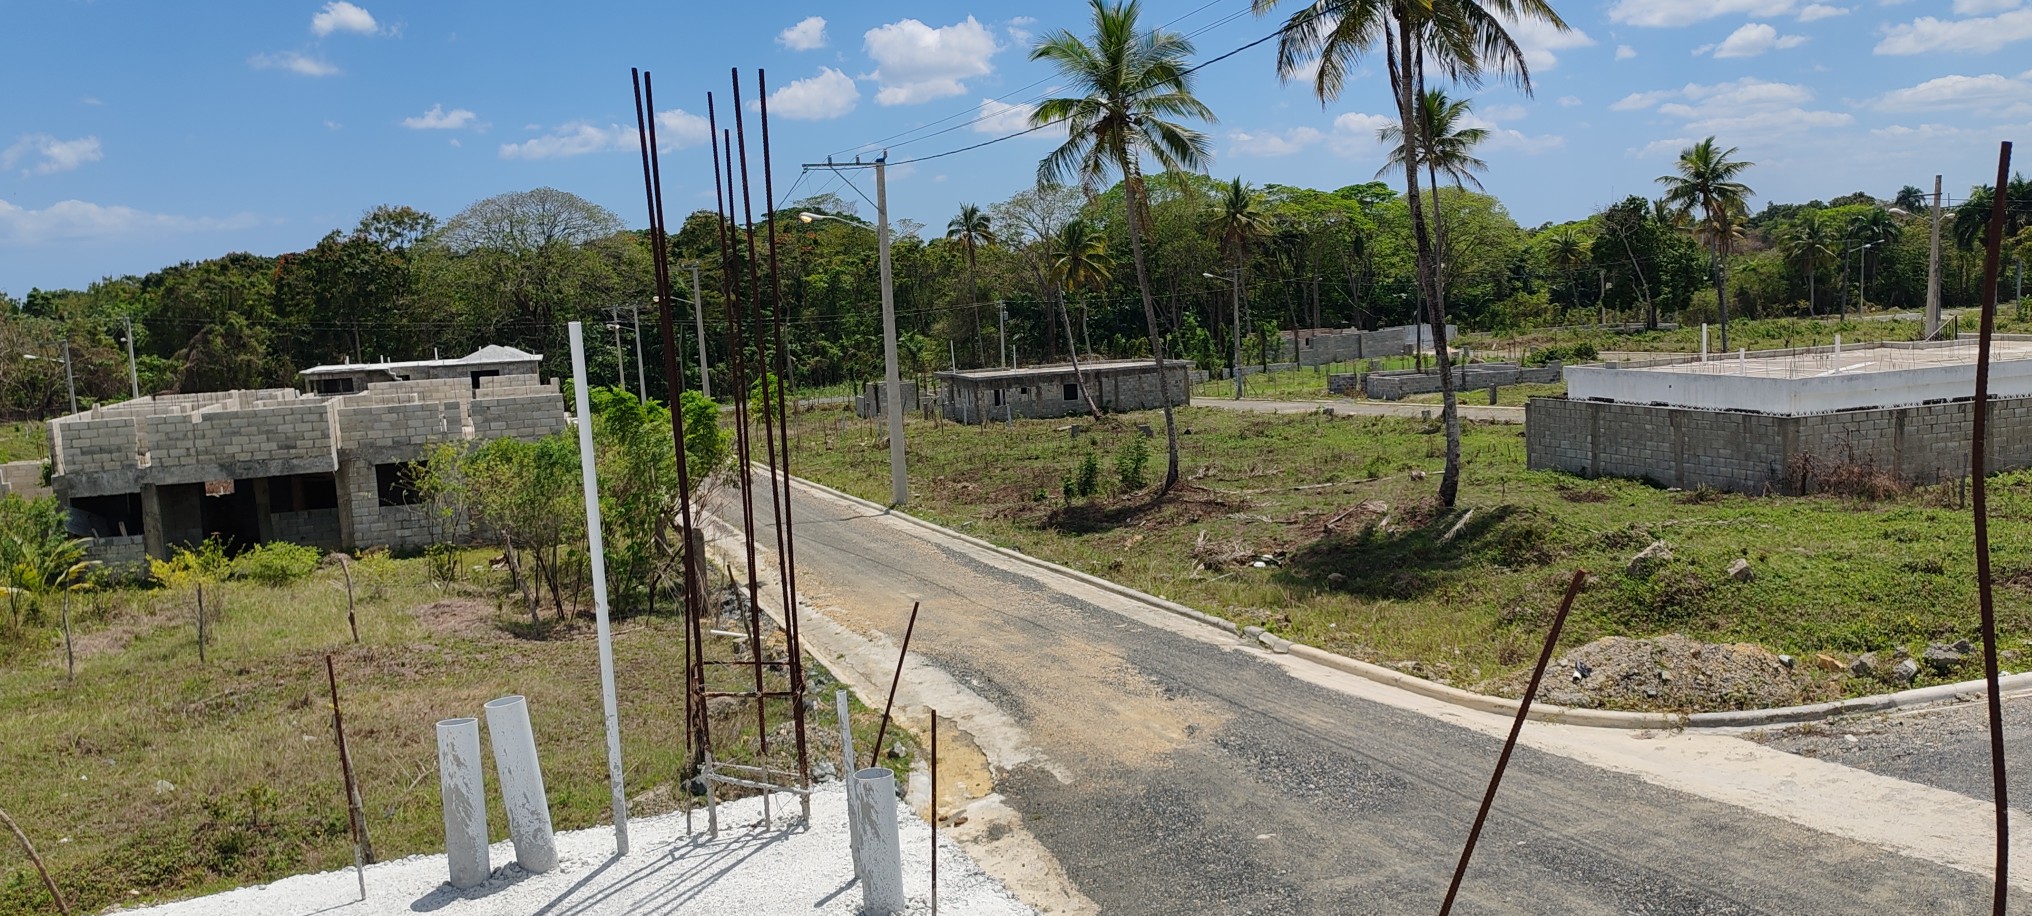 solares y terrenos - Pre-feria venta de terreno en santo domingo aprovecha el desc. 300 pesos por mts 3